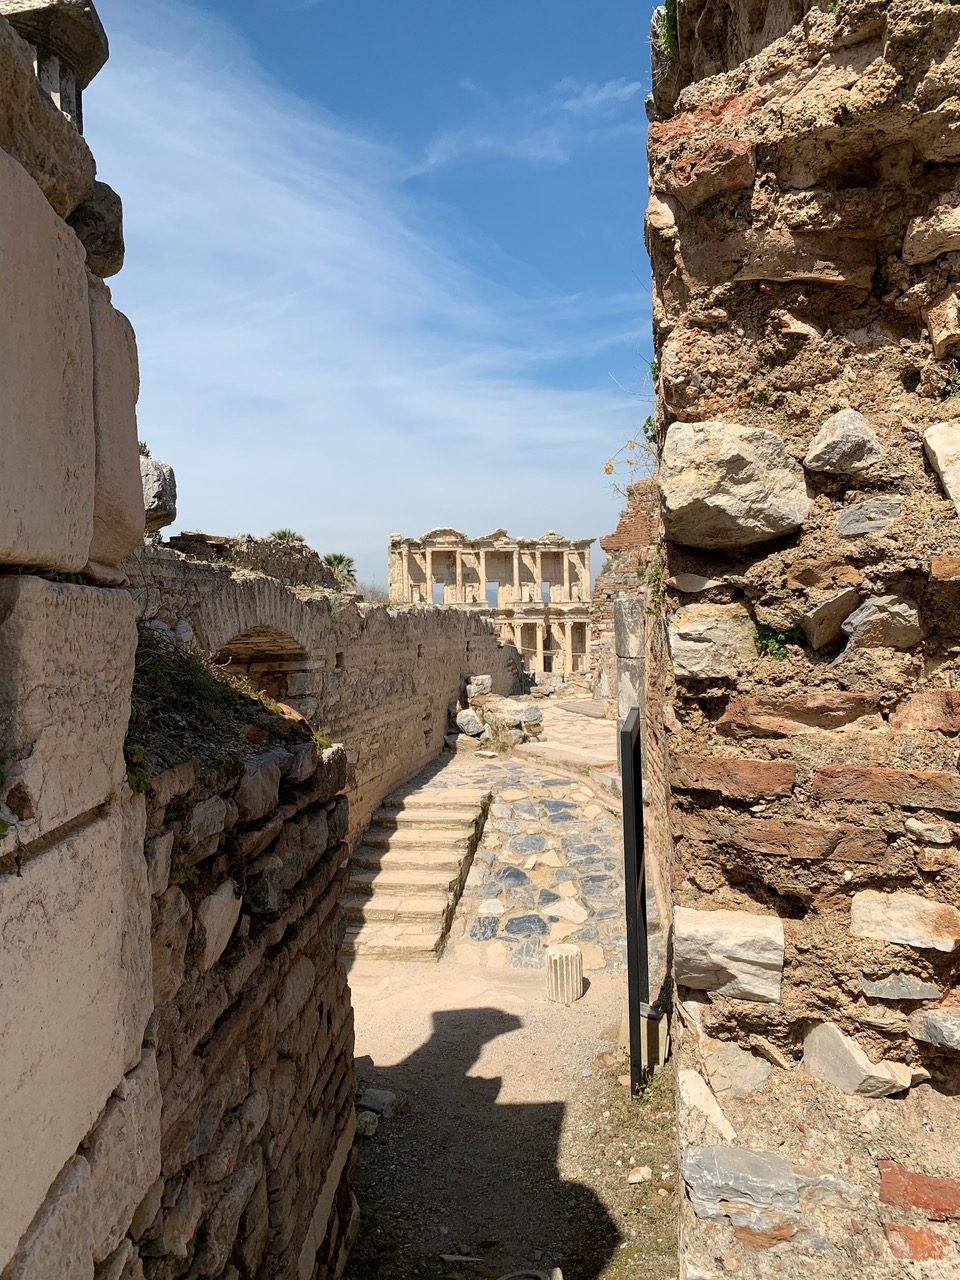 narrow alley between crumbling Roman structures